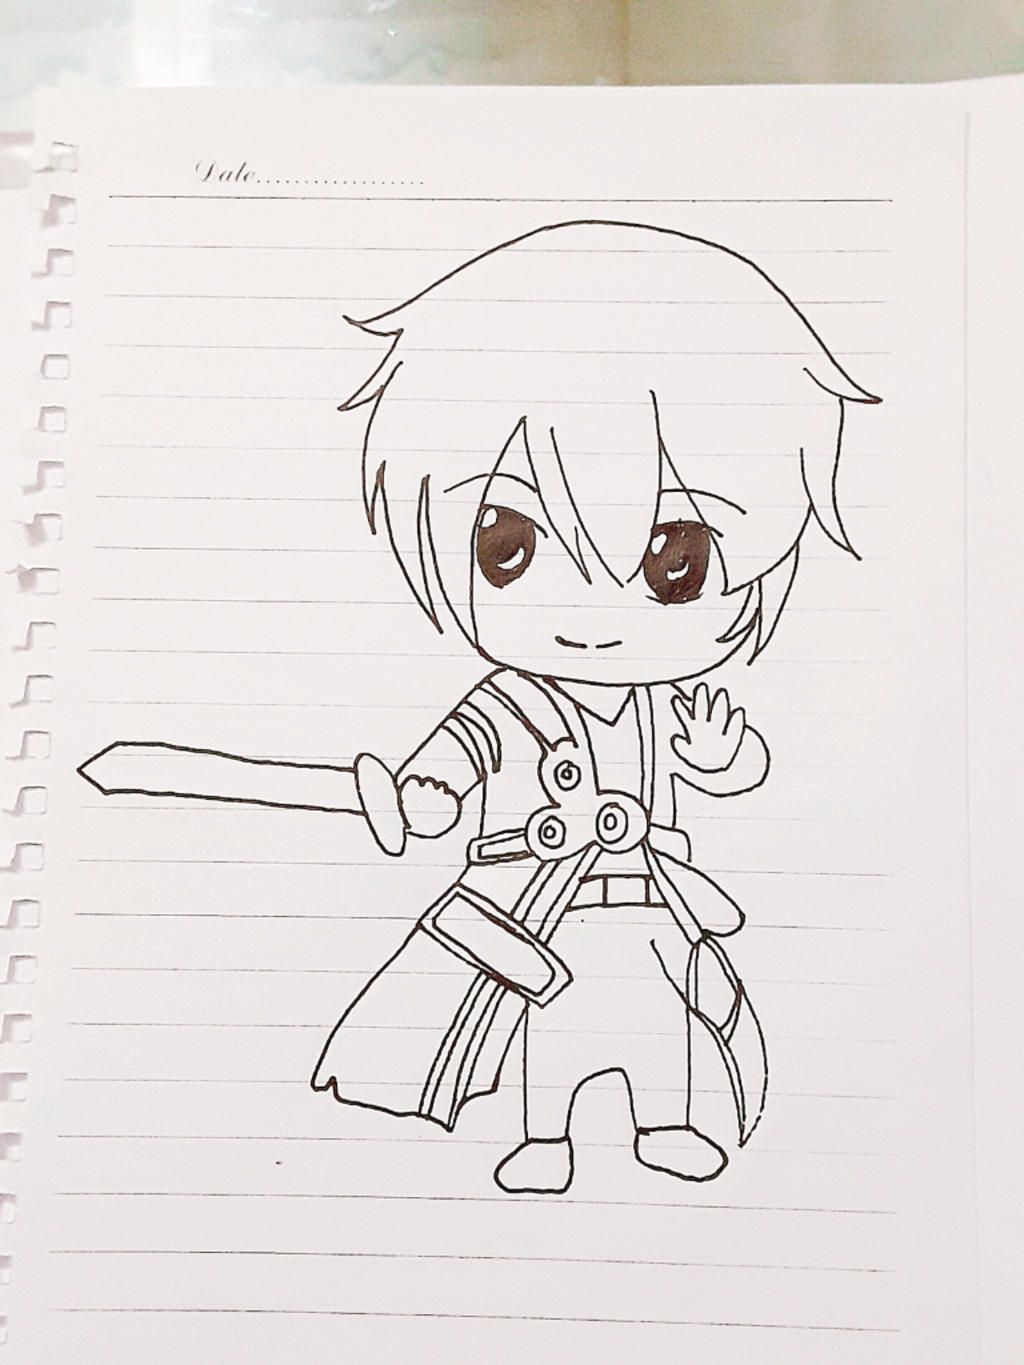 Kirito luôn là người hùng của trái tim fan Sword Art Online. Bức vẽ của Kirito chắc chắn sẽ làm bạn cảm thấy thỏa mãn, với màu sắc sáng tạo và đường nét chân thật. Hãy thưởng thức và tận hưởng khoảnh khắc này.